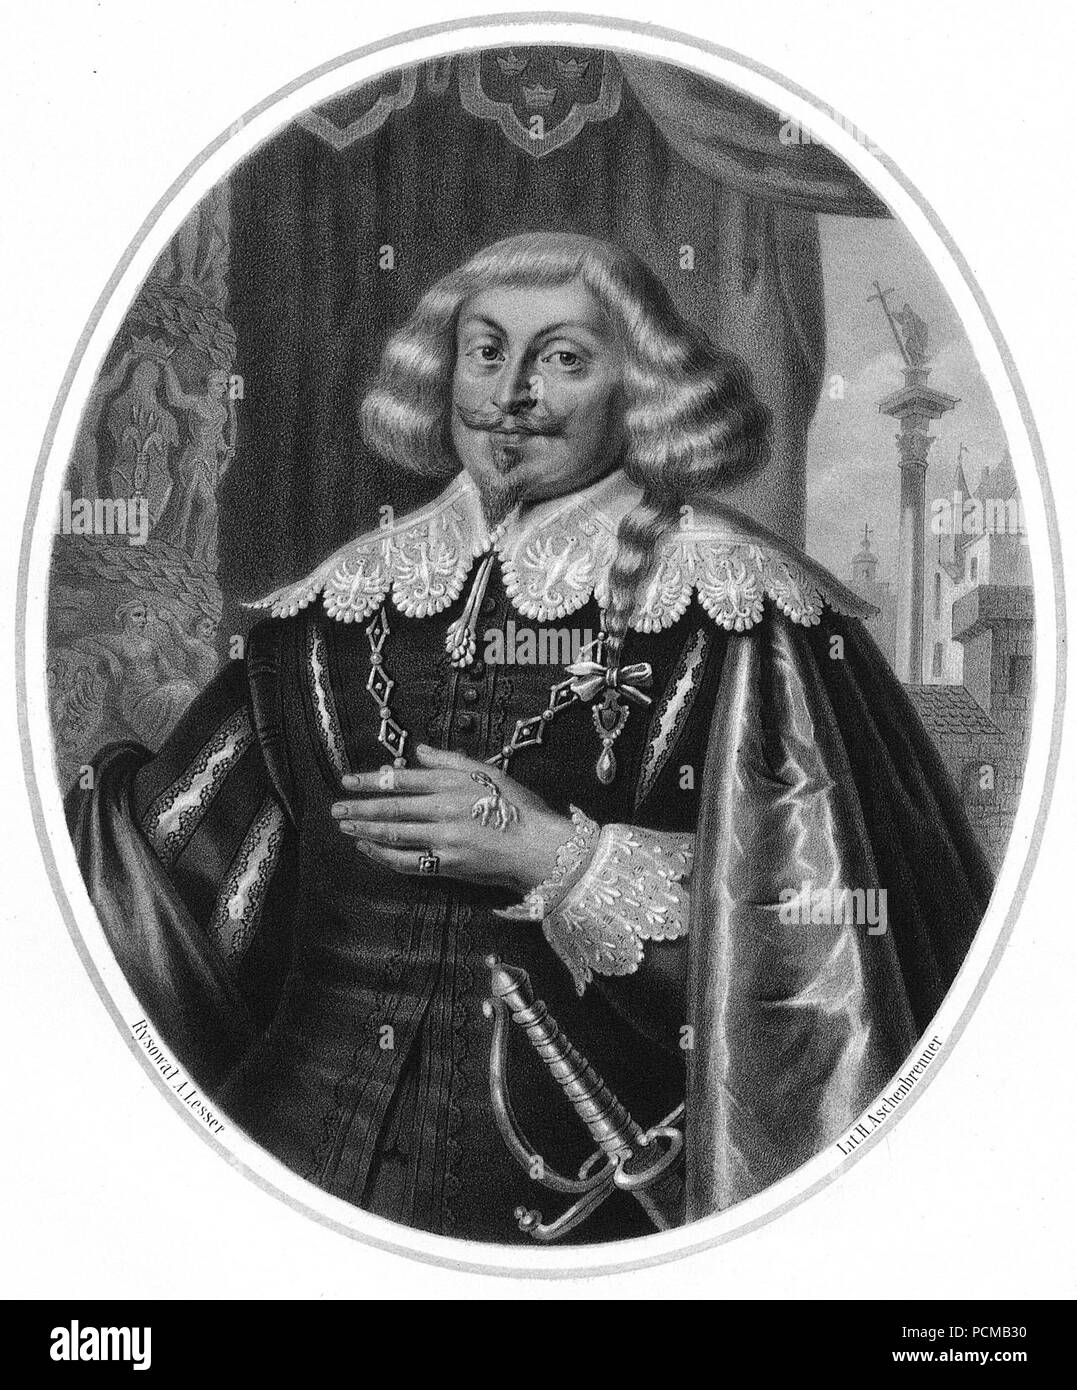 Aleksander Lesser, Władysław IV. Stock Photo